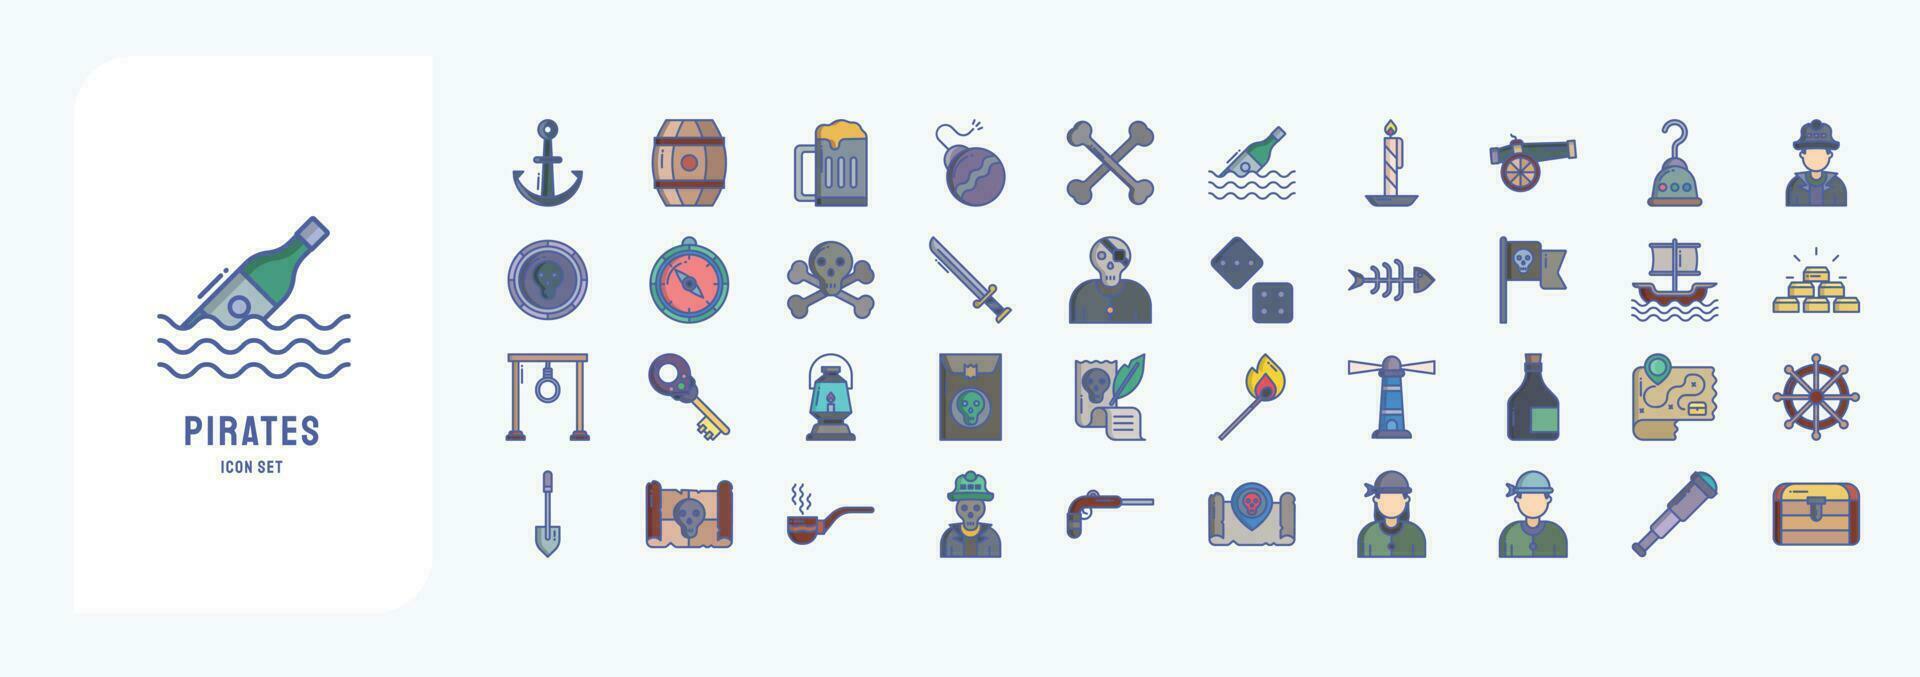 verzameling van pictogrammen verwant naar piraten, inclusief pictogrammen Leuk vinden anker, loop, bier, bom en meer vector